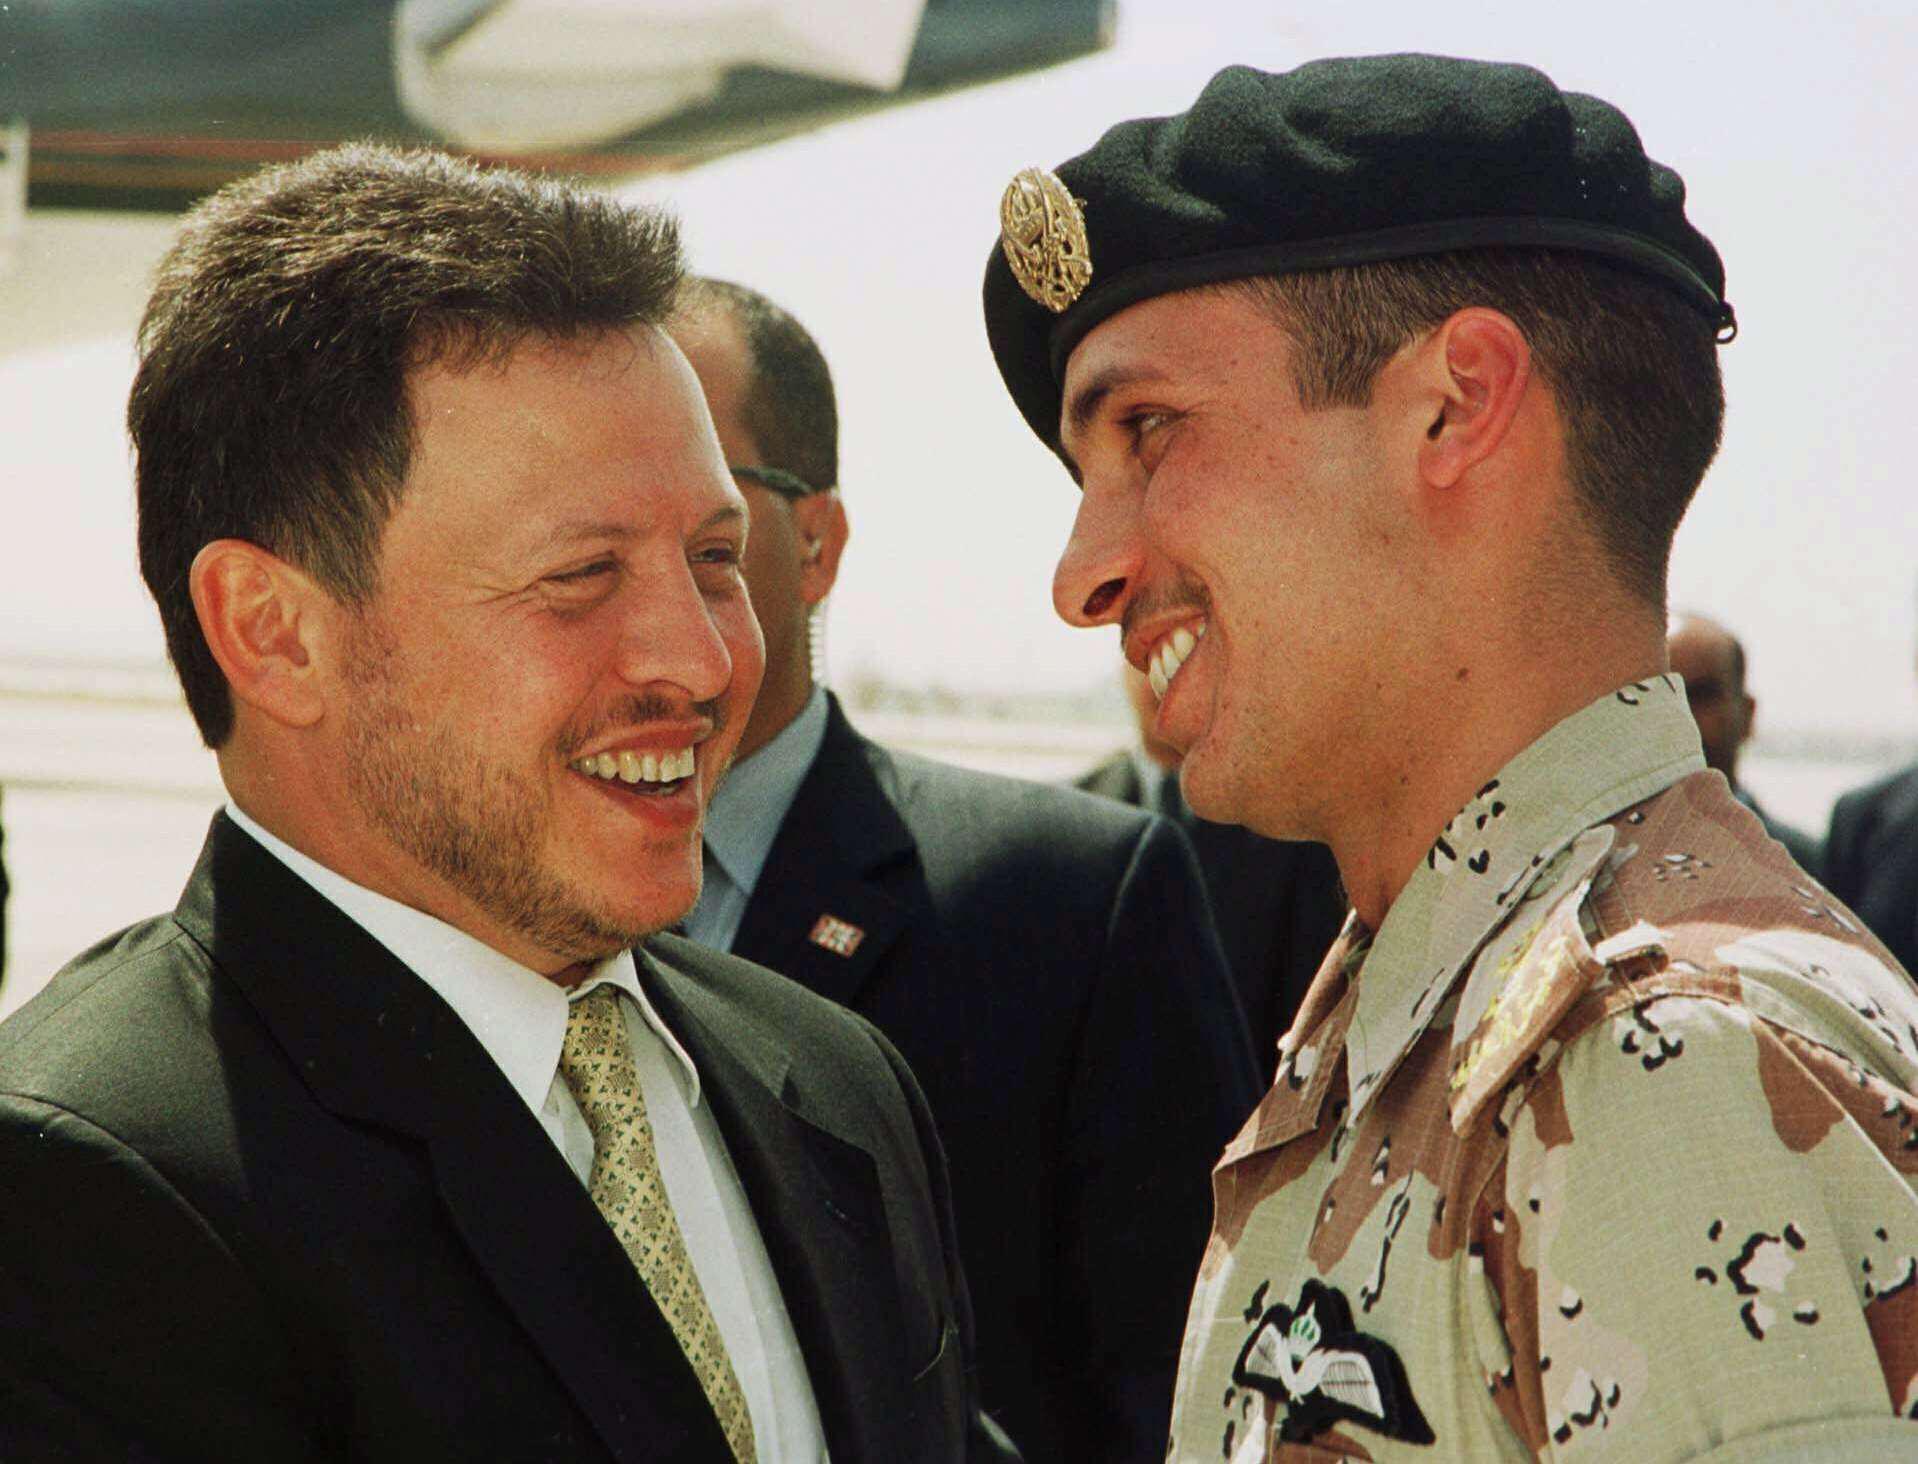 الديوان الملكي الأردني يعلن تقييد اتصالات وإقامة وتحركات الأمير حمزة بن الحسين